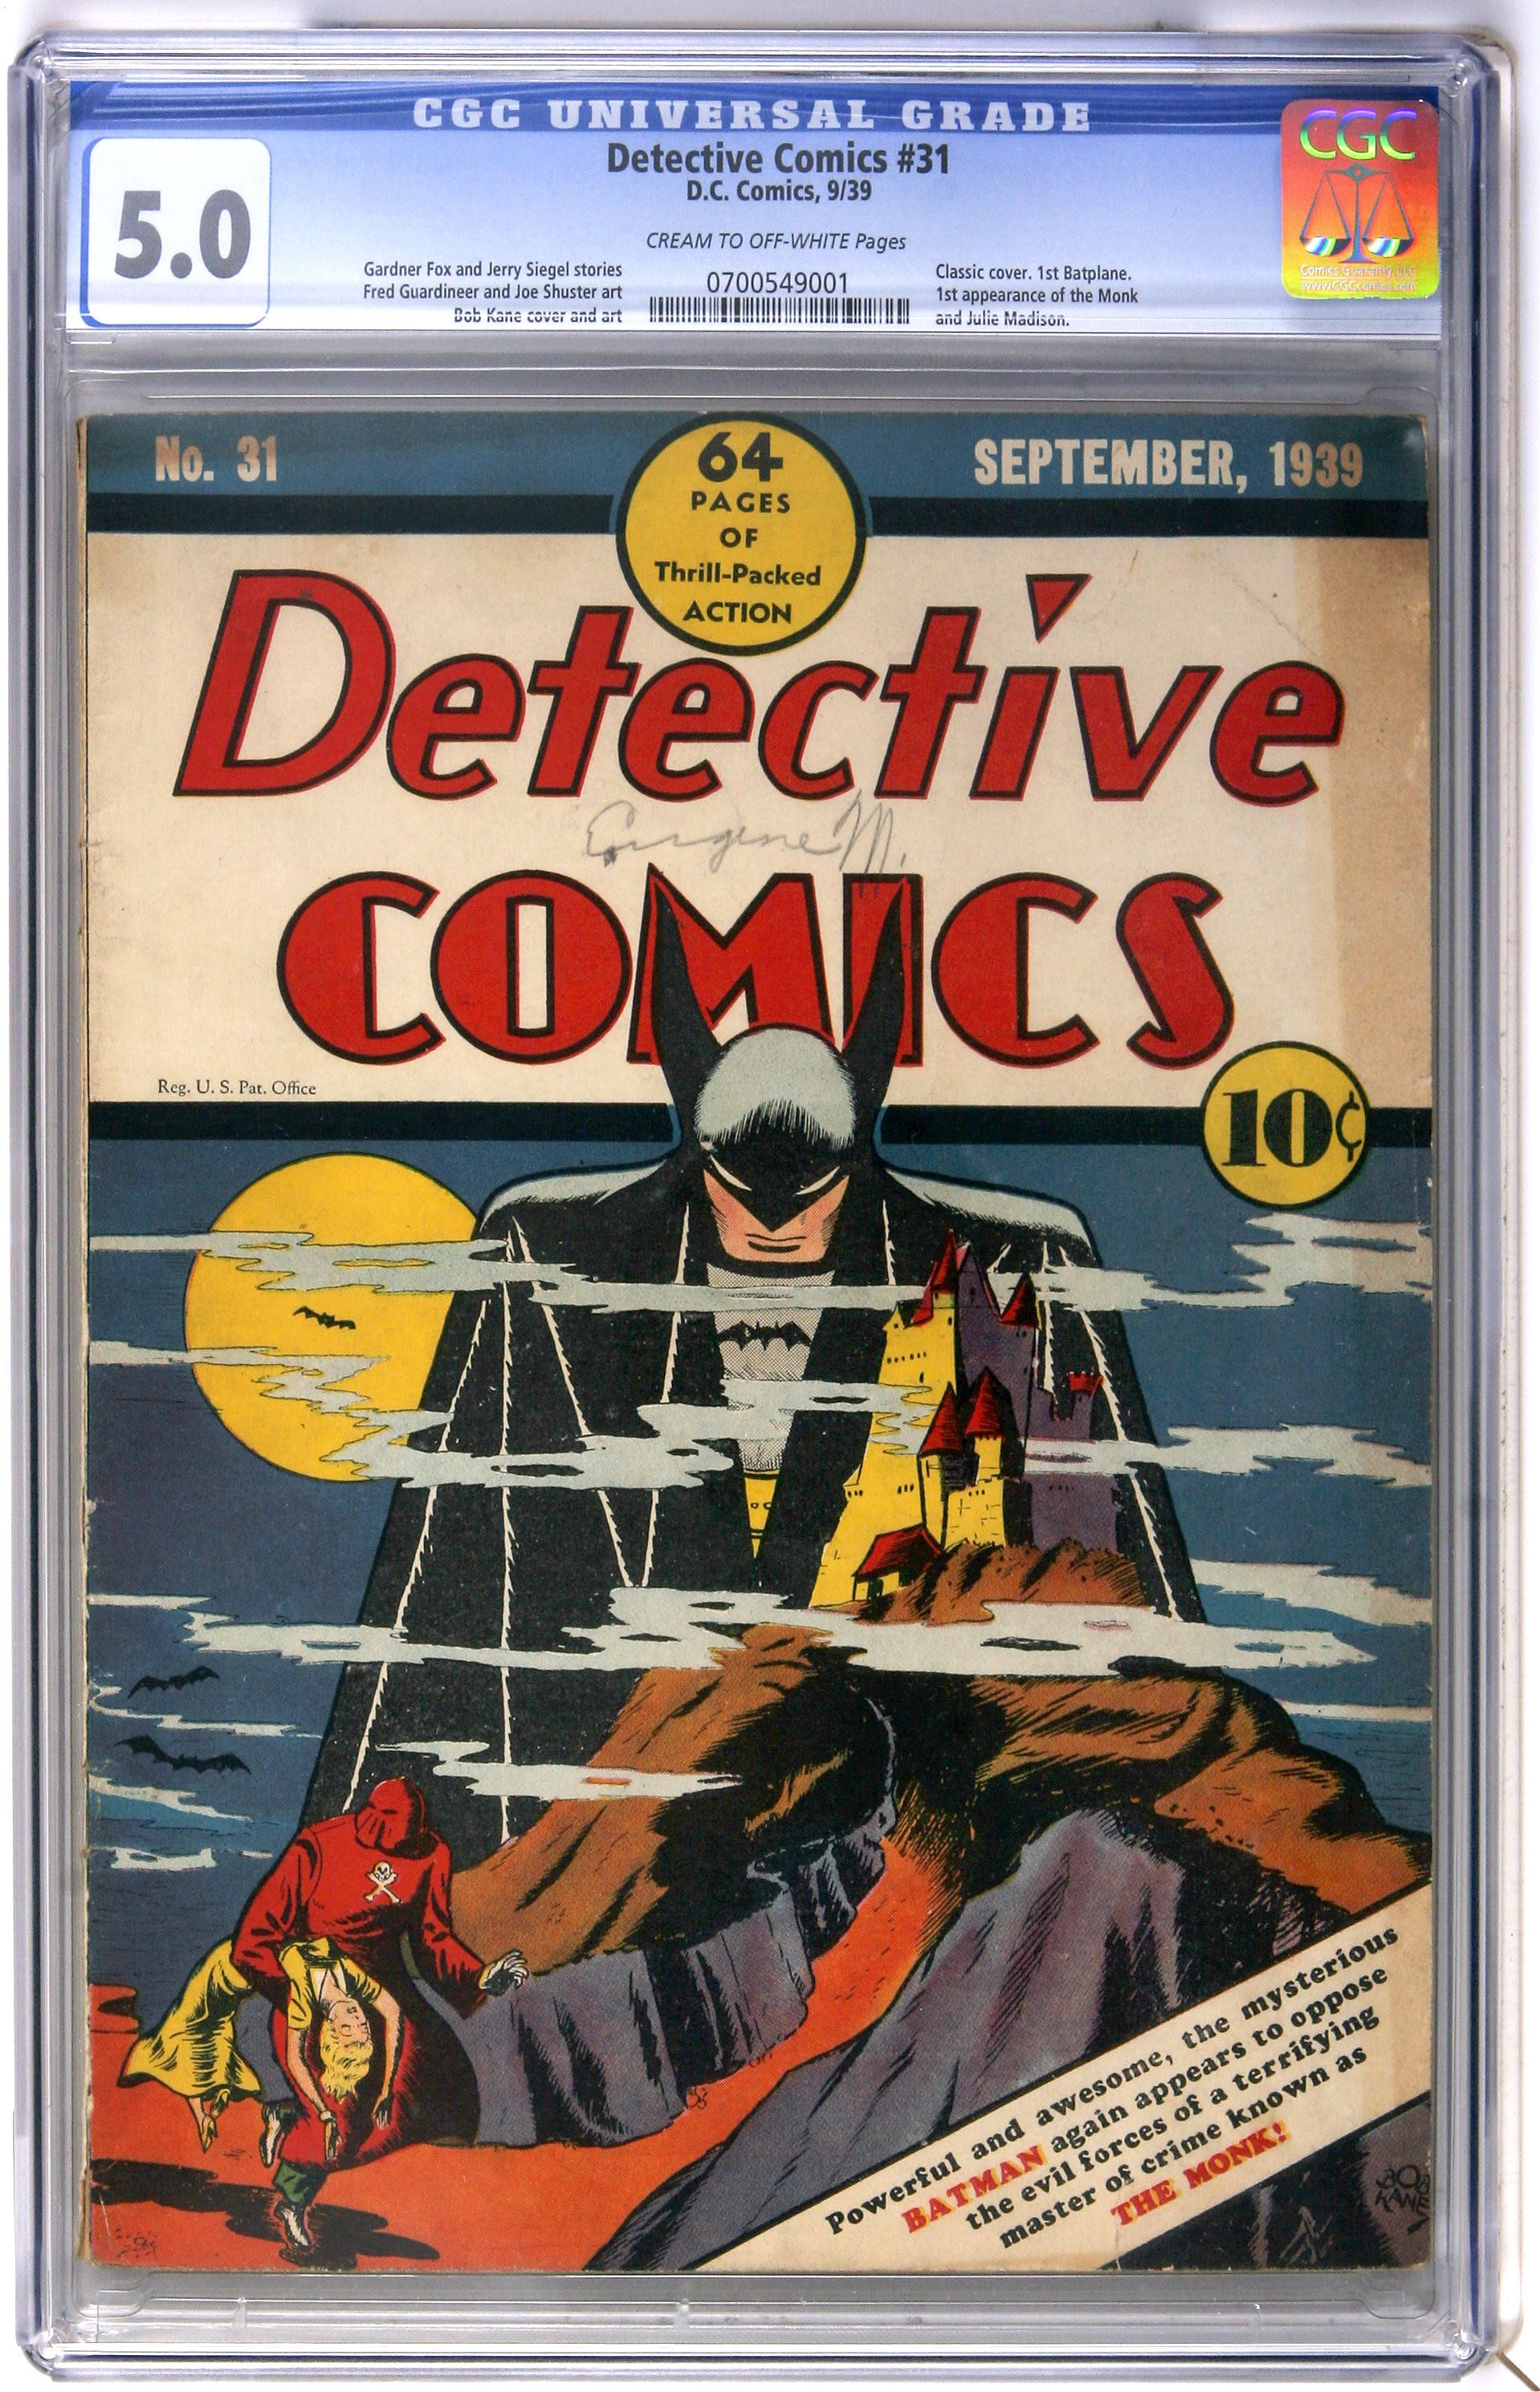 Detective comics 31 couverture batman se tient derrière une montagne brumeuse regardant un homme masqué enlevant une femme